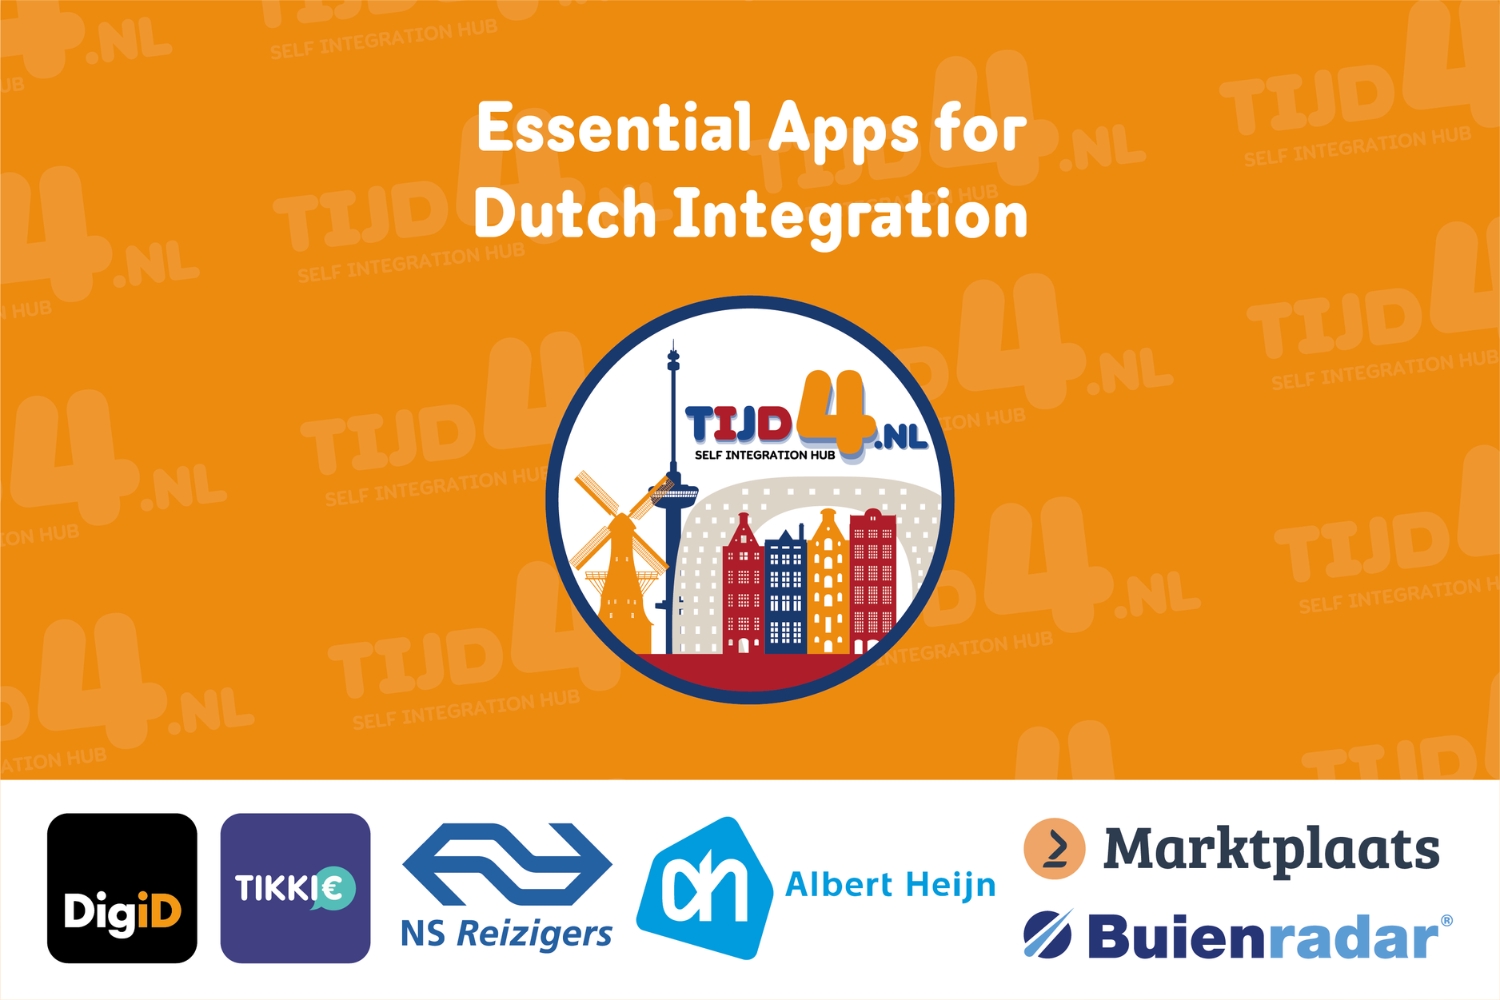 Cover photo of TIJD4's blog post "Essential Apps for Dutch Integration" featuring DigiD, Tikkie, NS Reziger, Albert Heijn, Marktplaats and Buienradar logos.